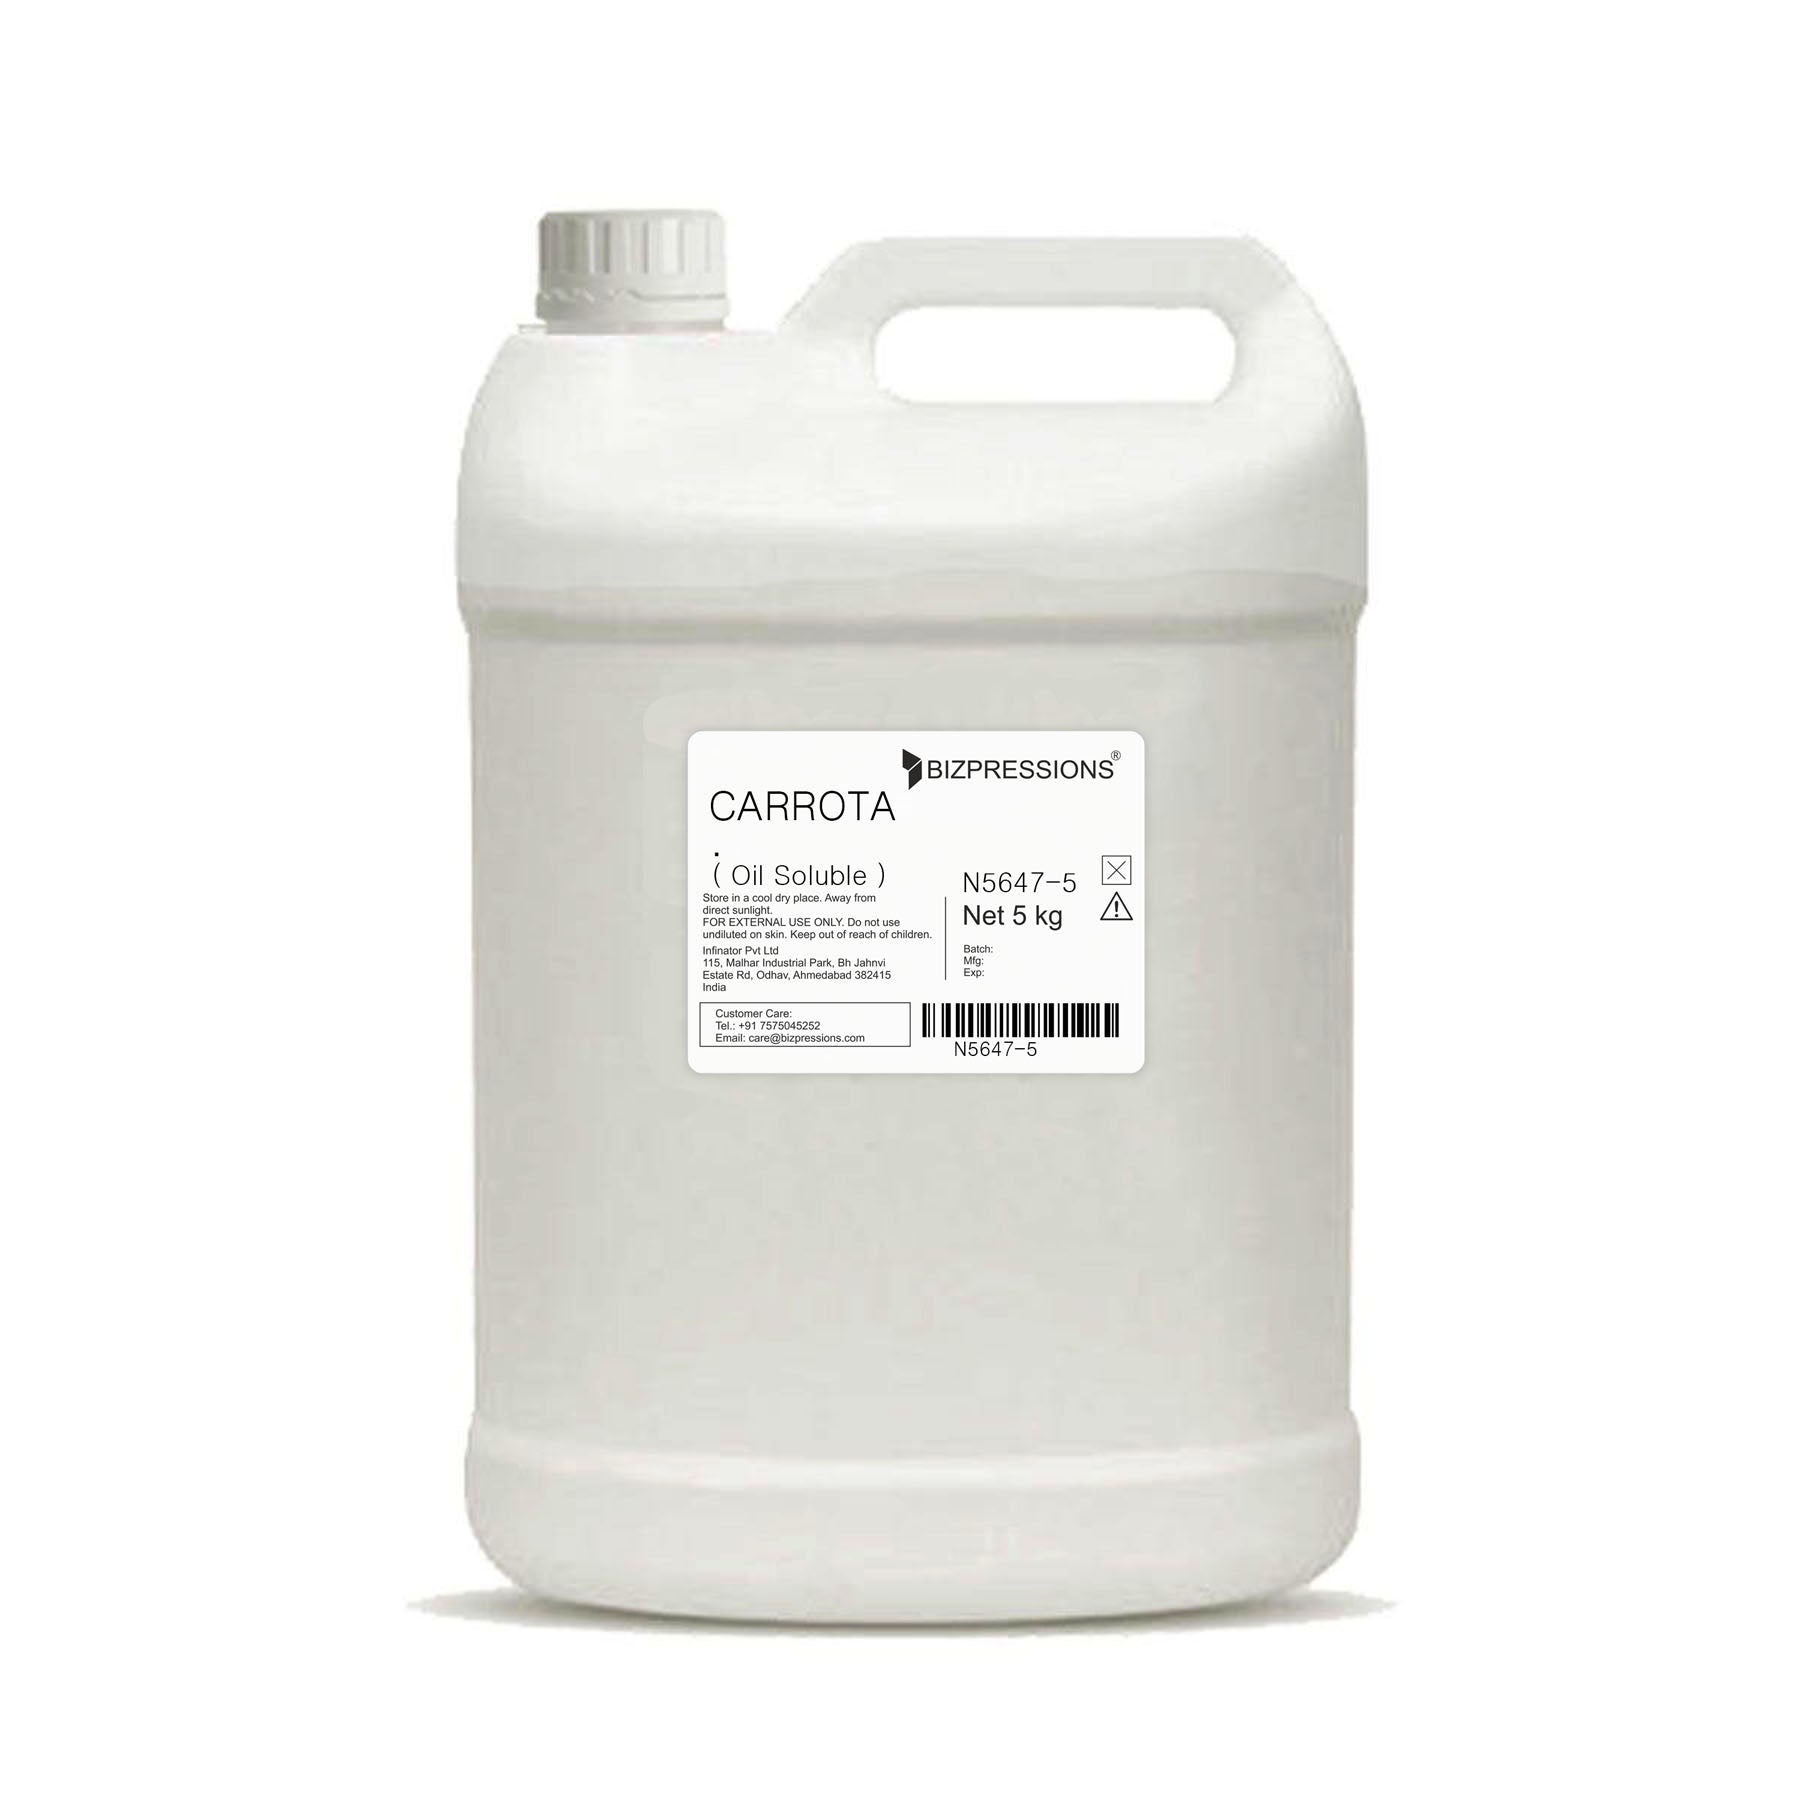 CARROTA - Fragrance ( Oil Soluble ) - 5 kg